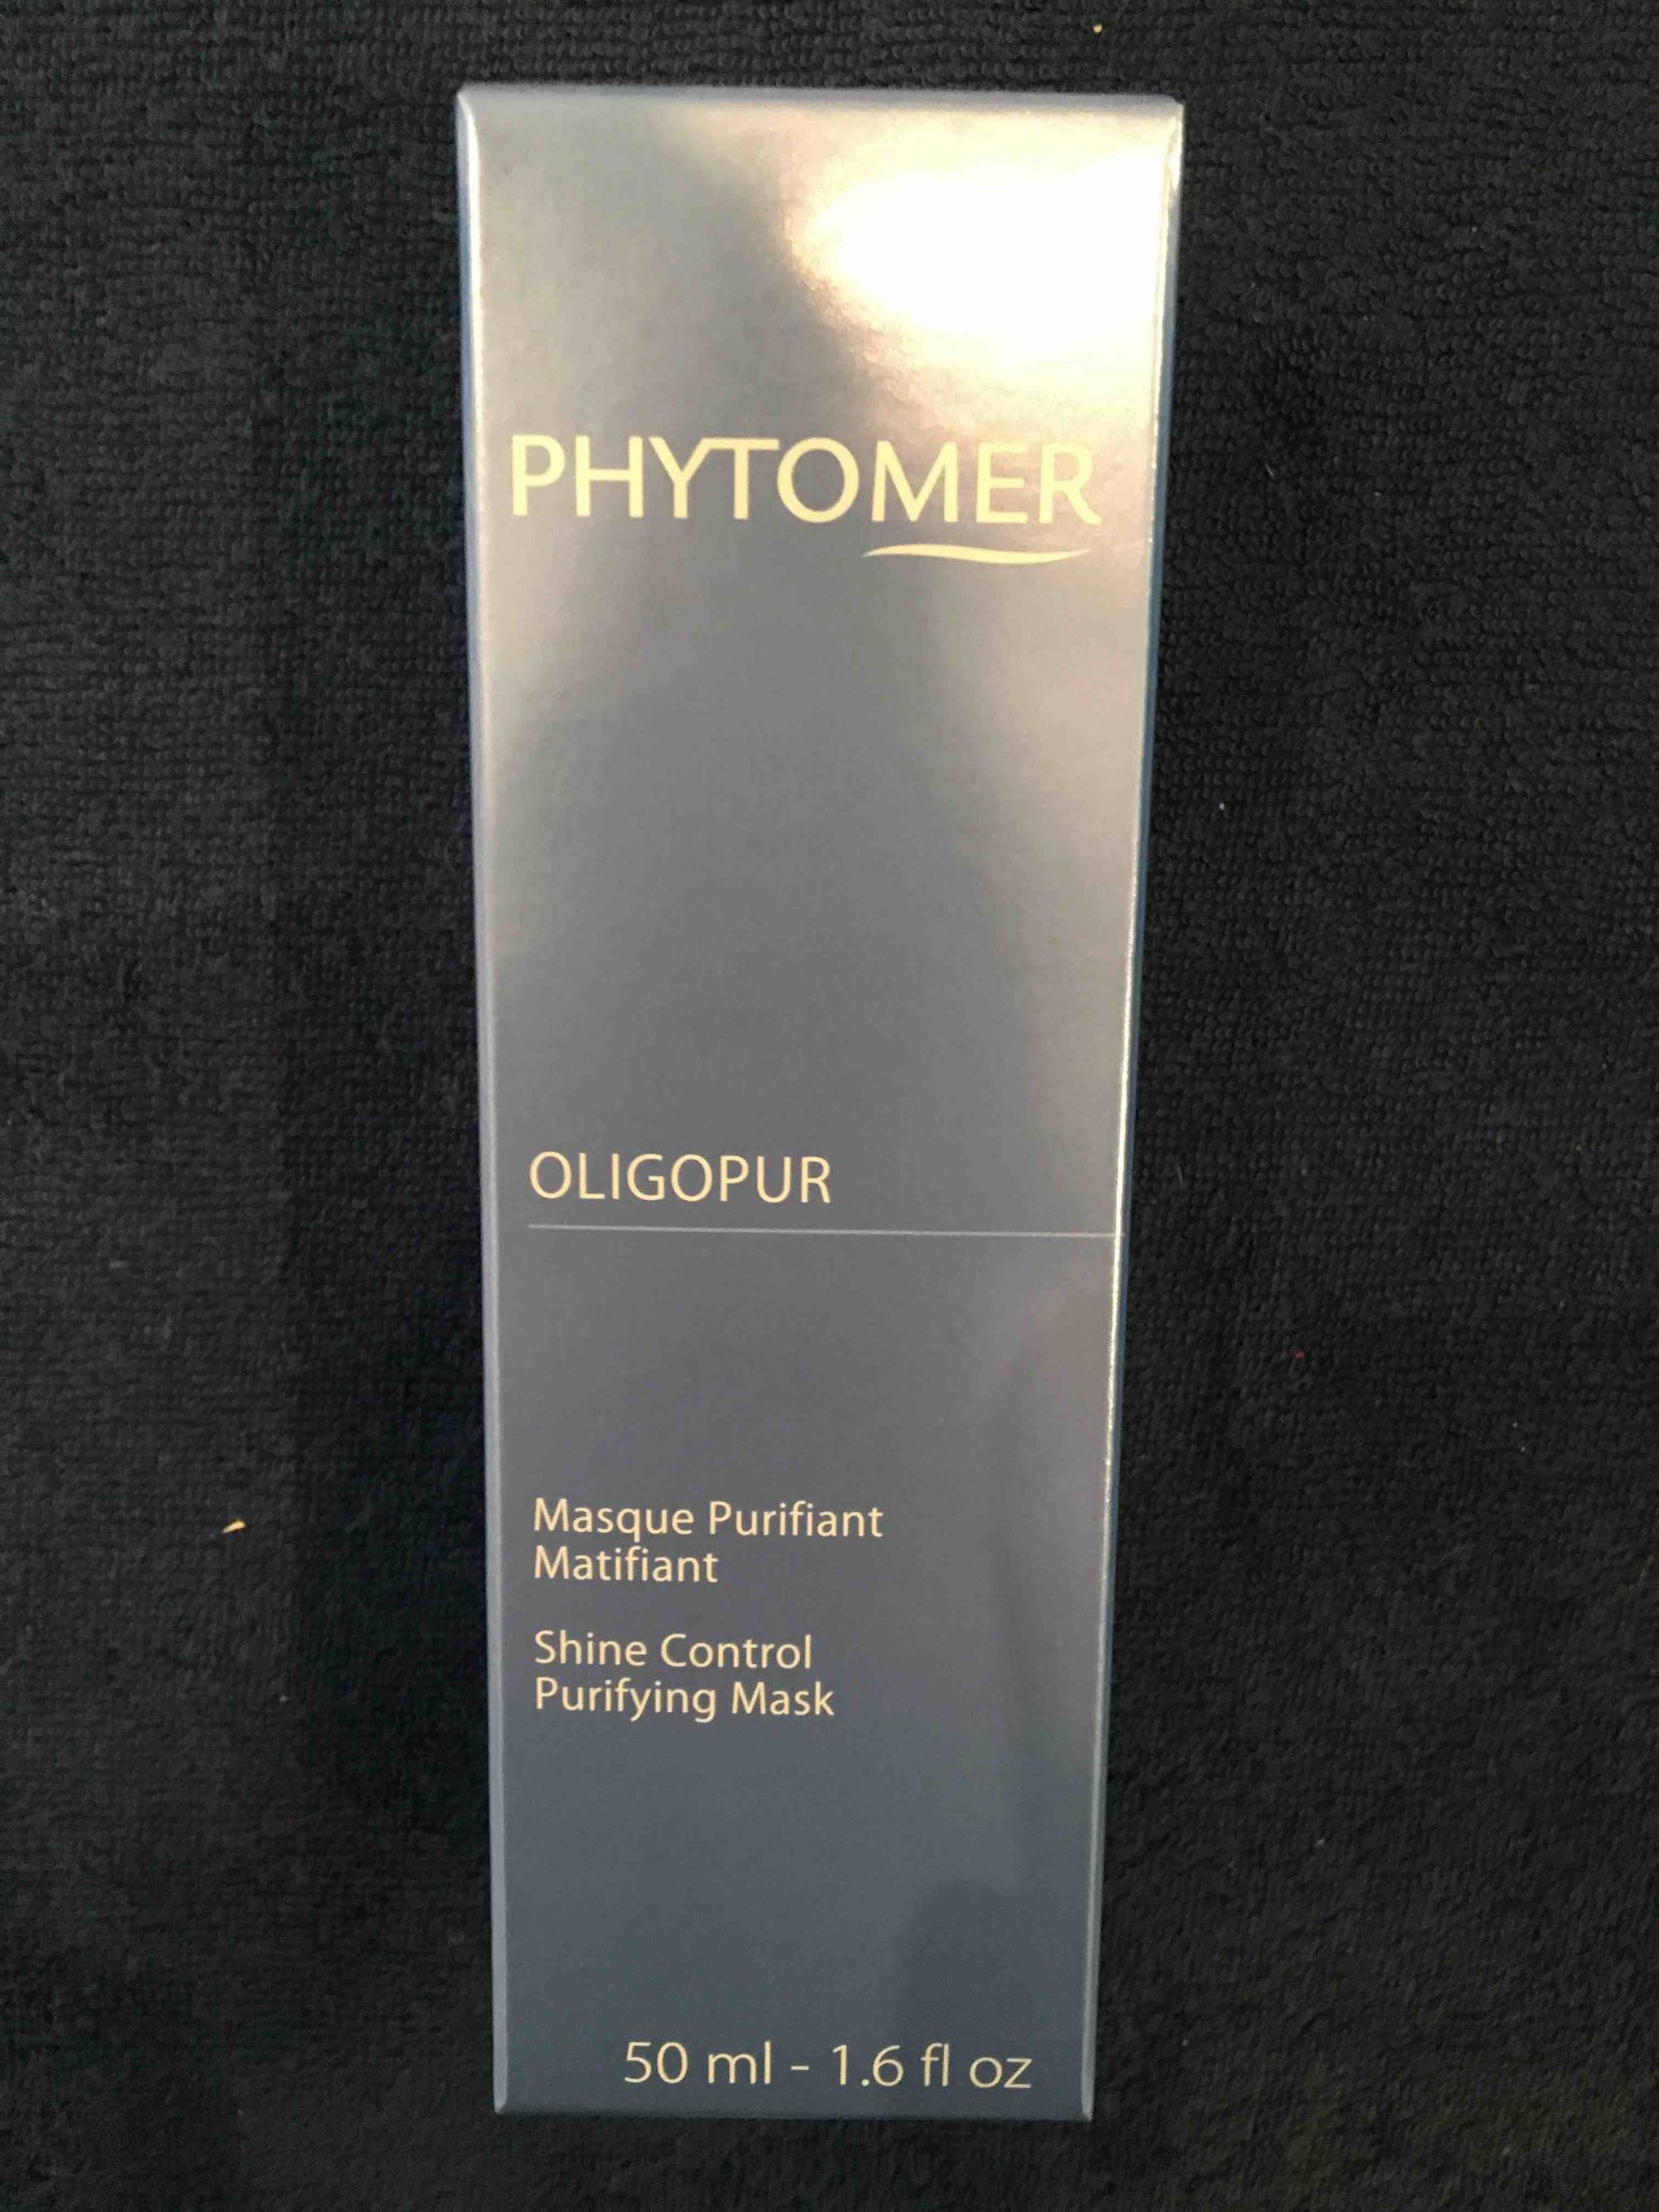 PHYTOMER - Oligopur - Masque purifiant matifiant